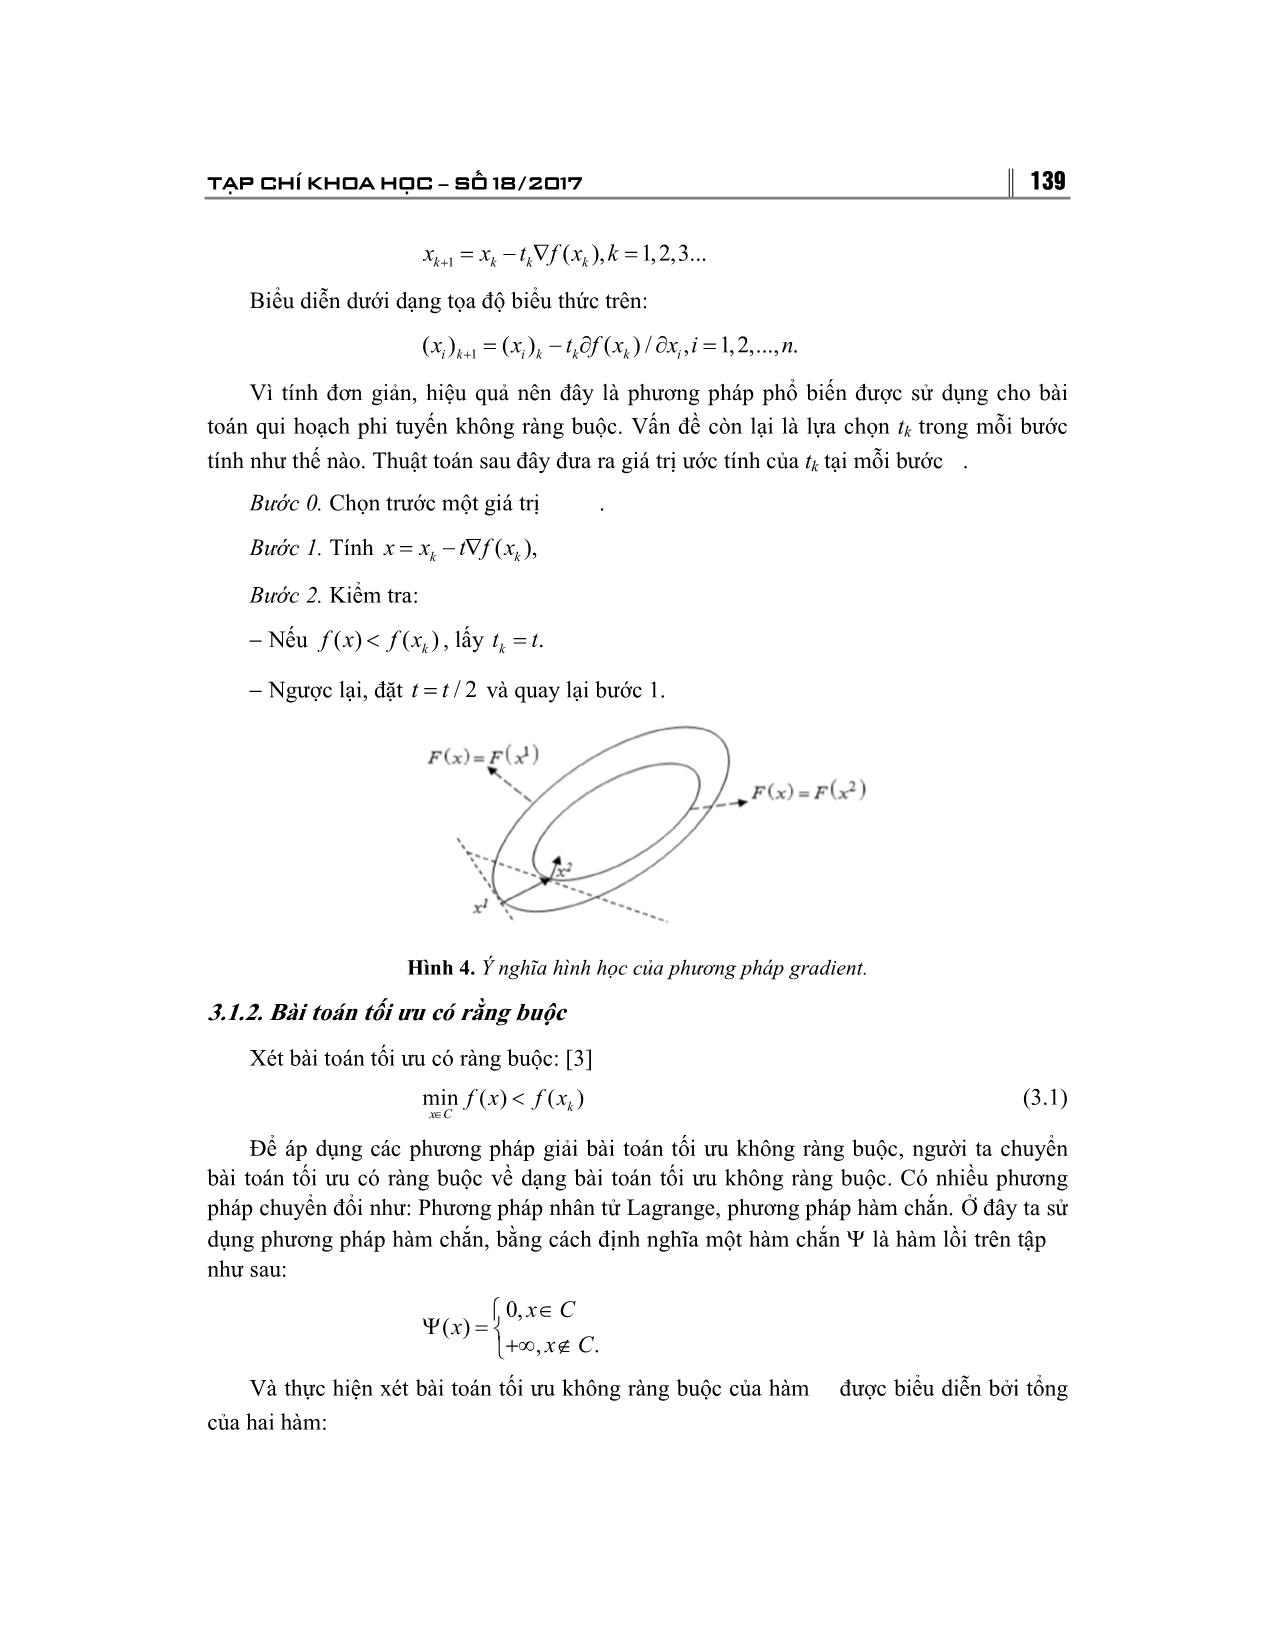 Giải bài toán tối ưu bằng phương pháp Gradient và ứng dụng trang 4